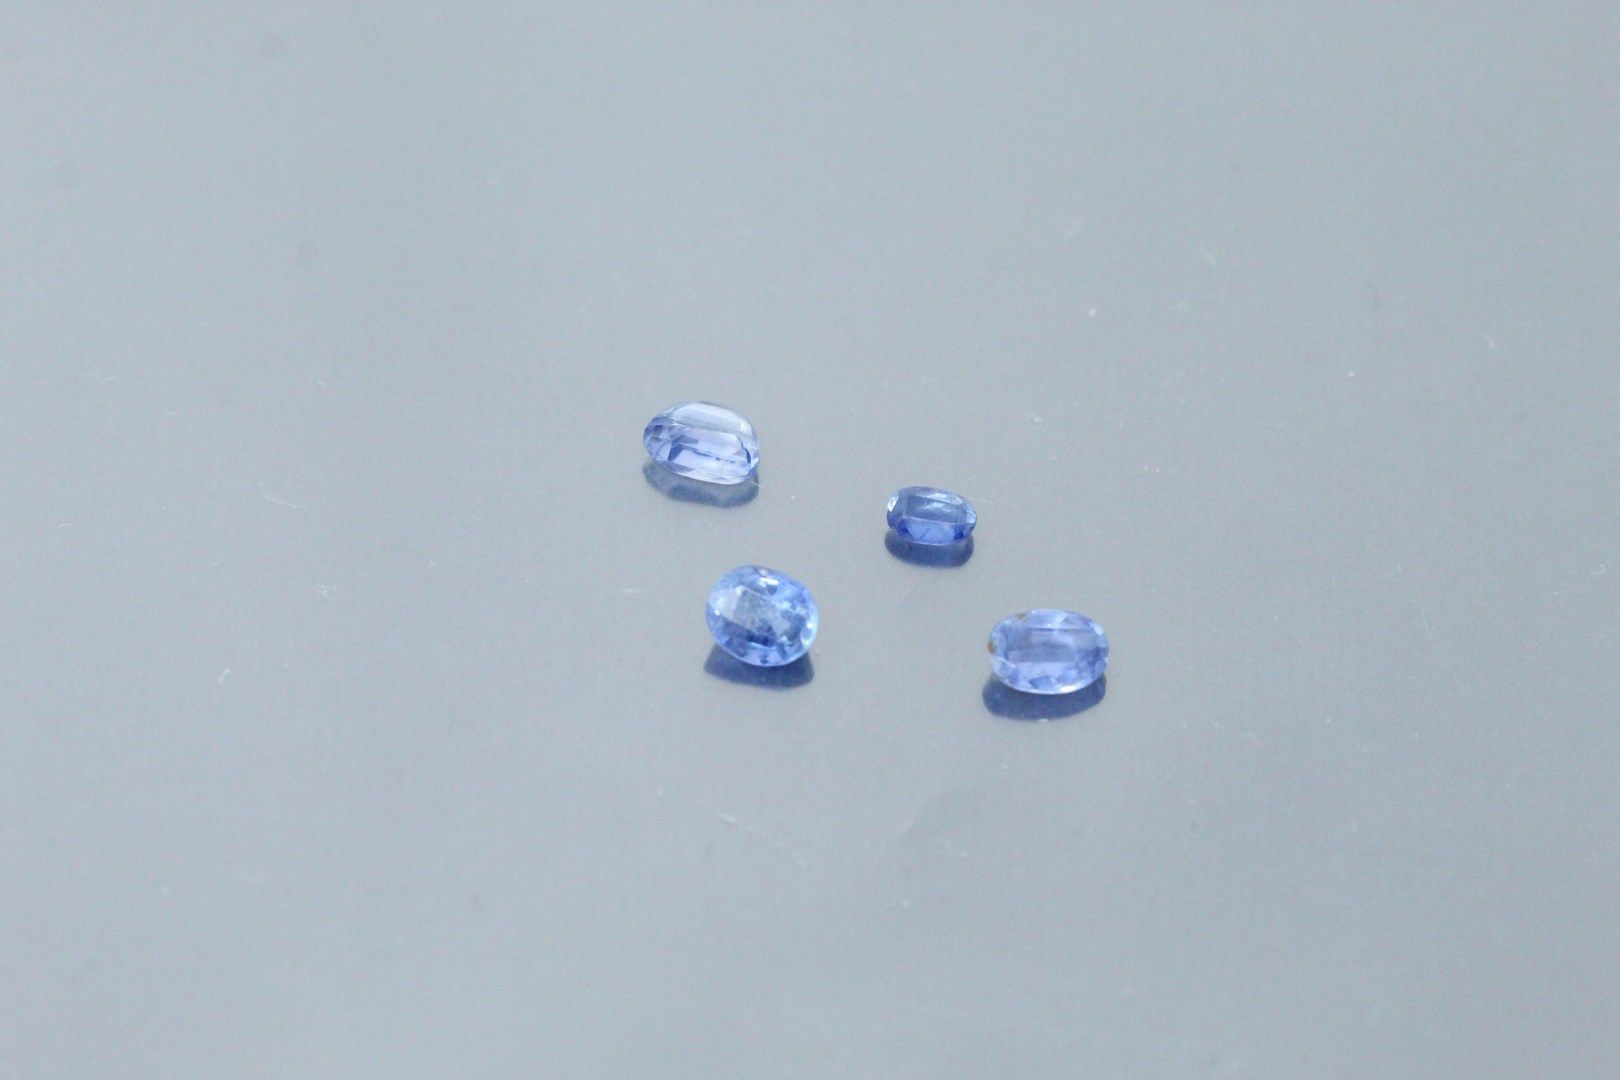 Null 纸上四颗蓝宝石拍品。

锡兰，未加热。

重量：约3.25克拉